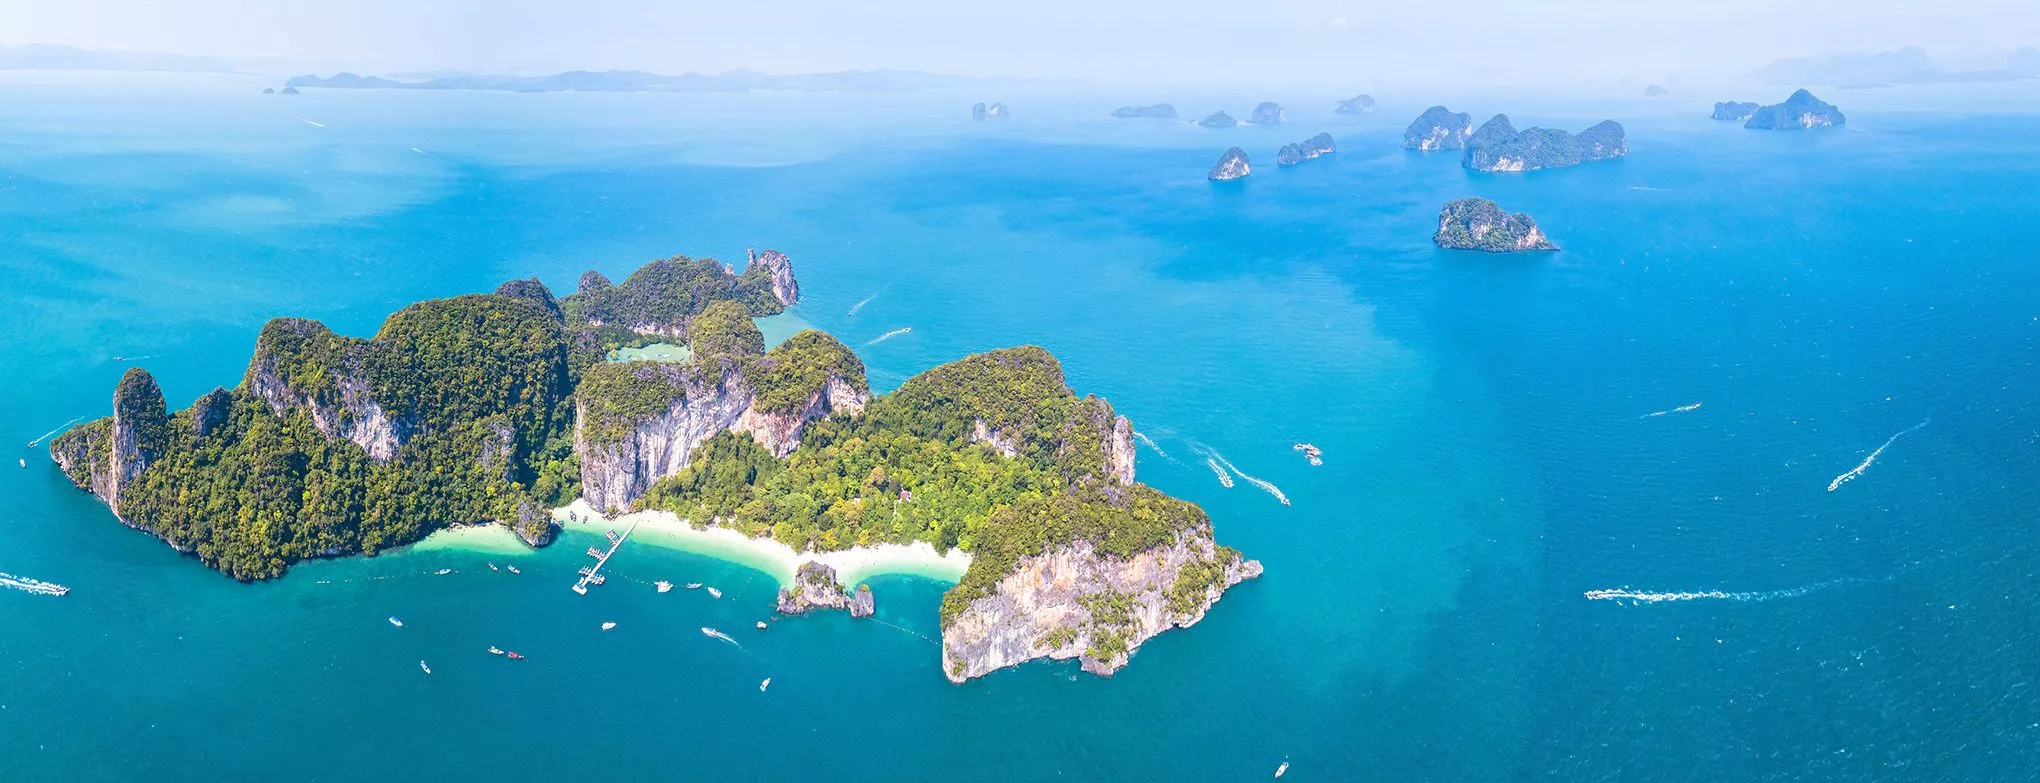 Mit mehr als 500 Inseln im pazifischen und indischen Ozean zählt Thailand zu den inselreichsten Staaten Südostasiens